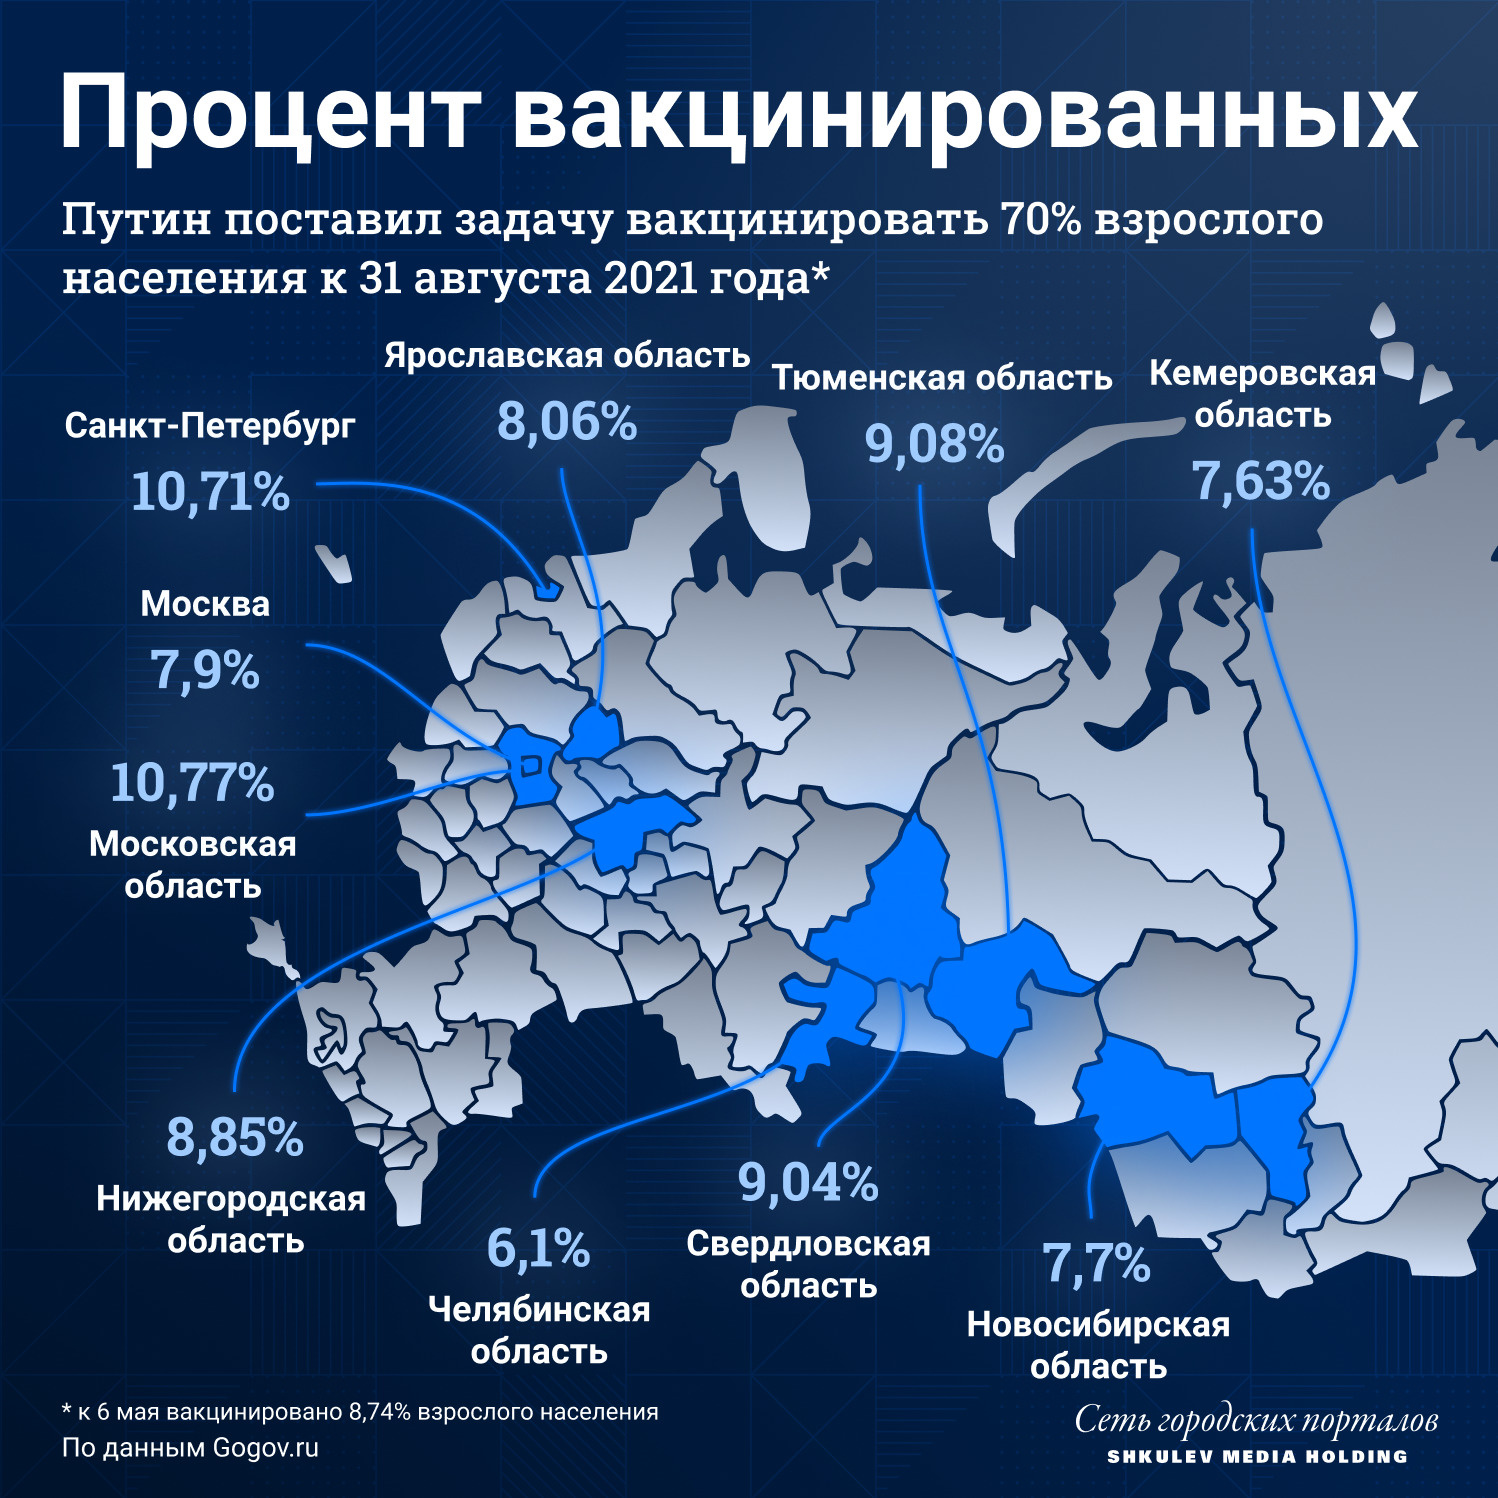 Сейчас в России вакцинировано примерно 8% населения